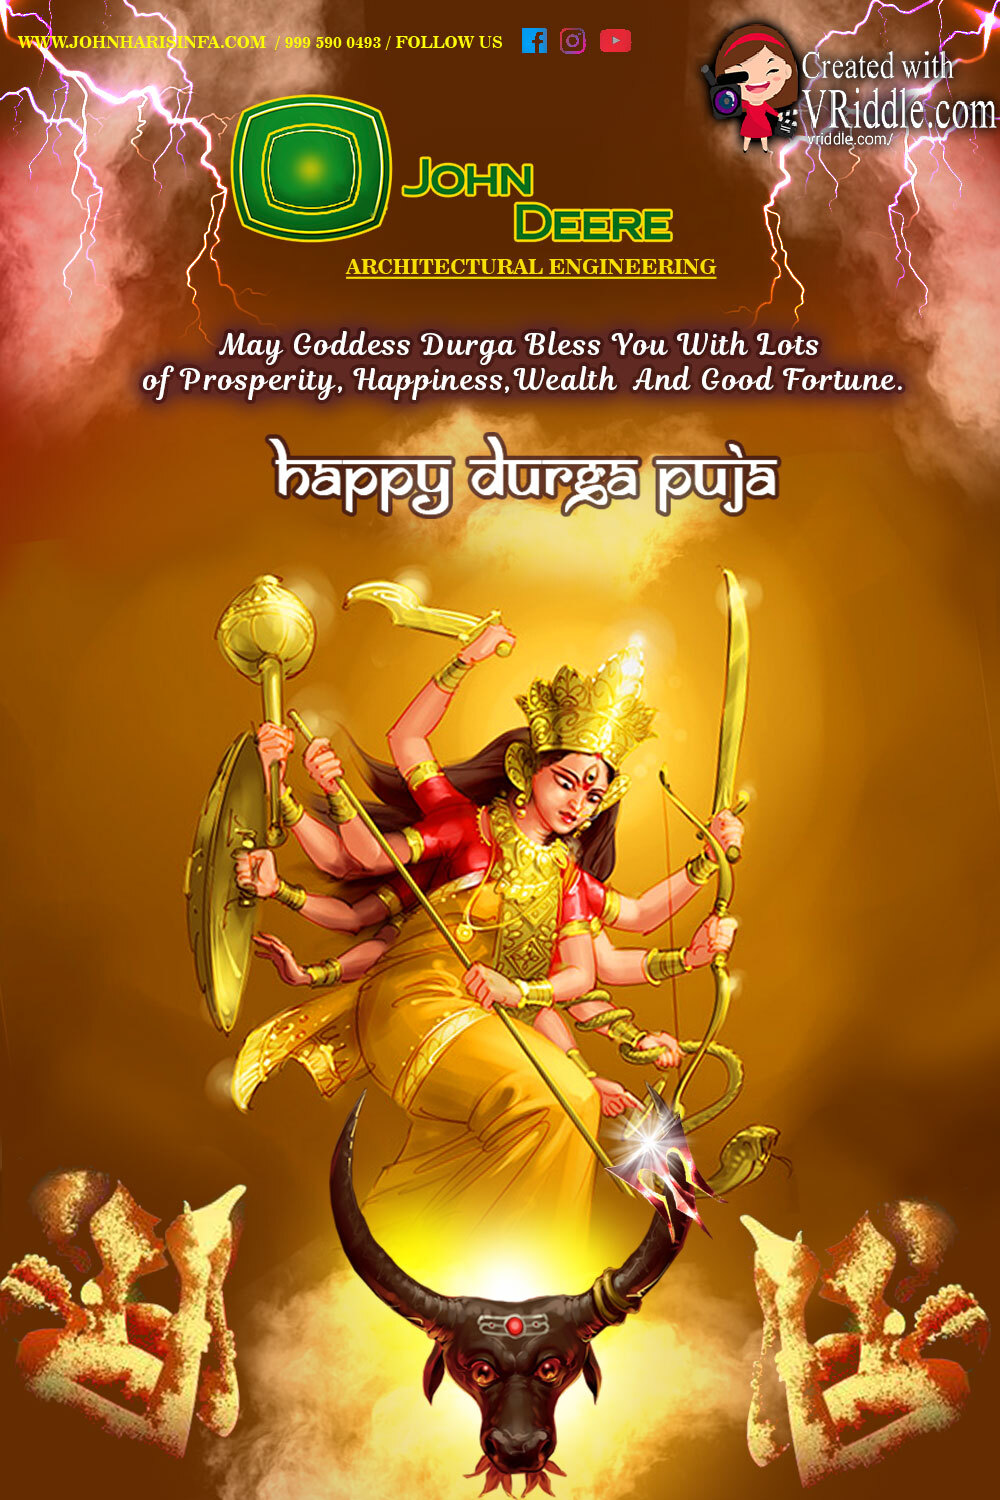 Golden Durga Dussehra Greeting Card – VRiddle